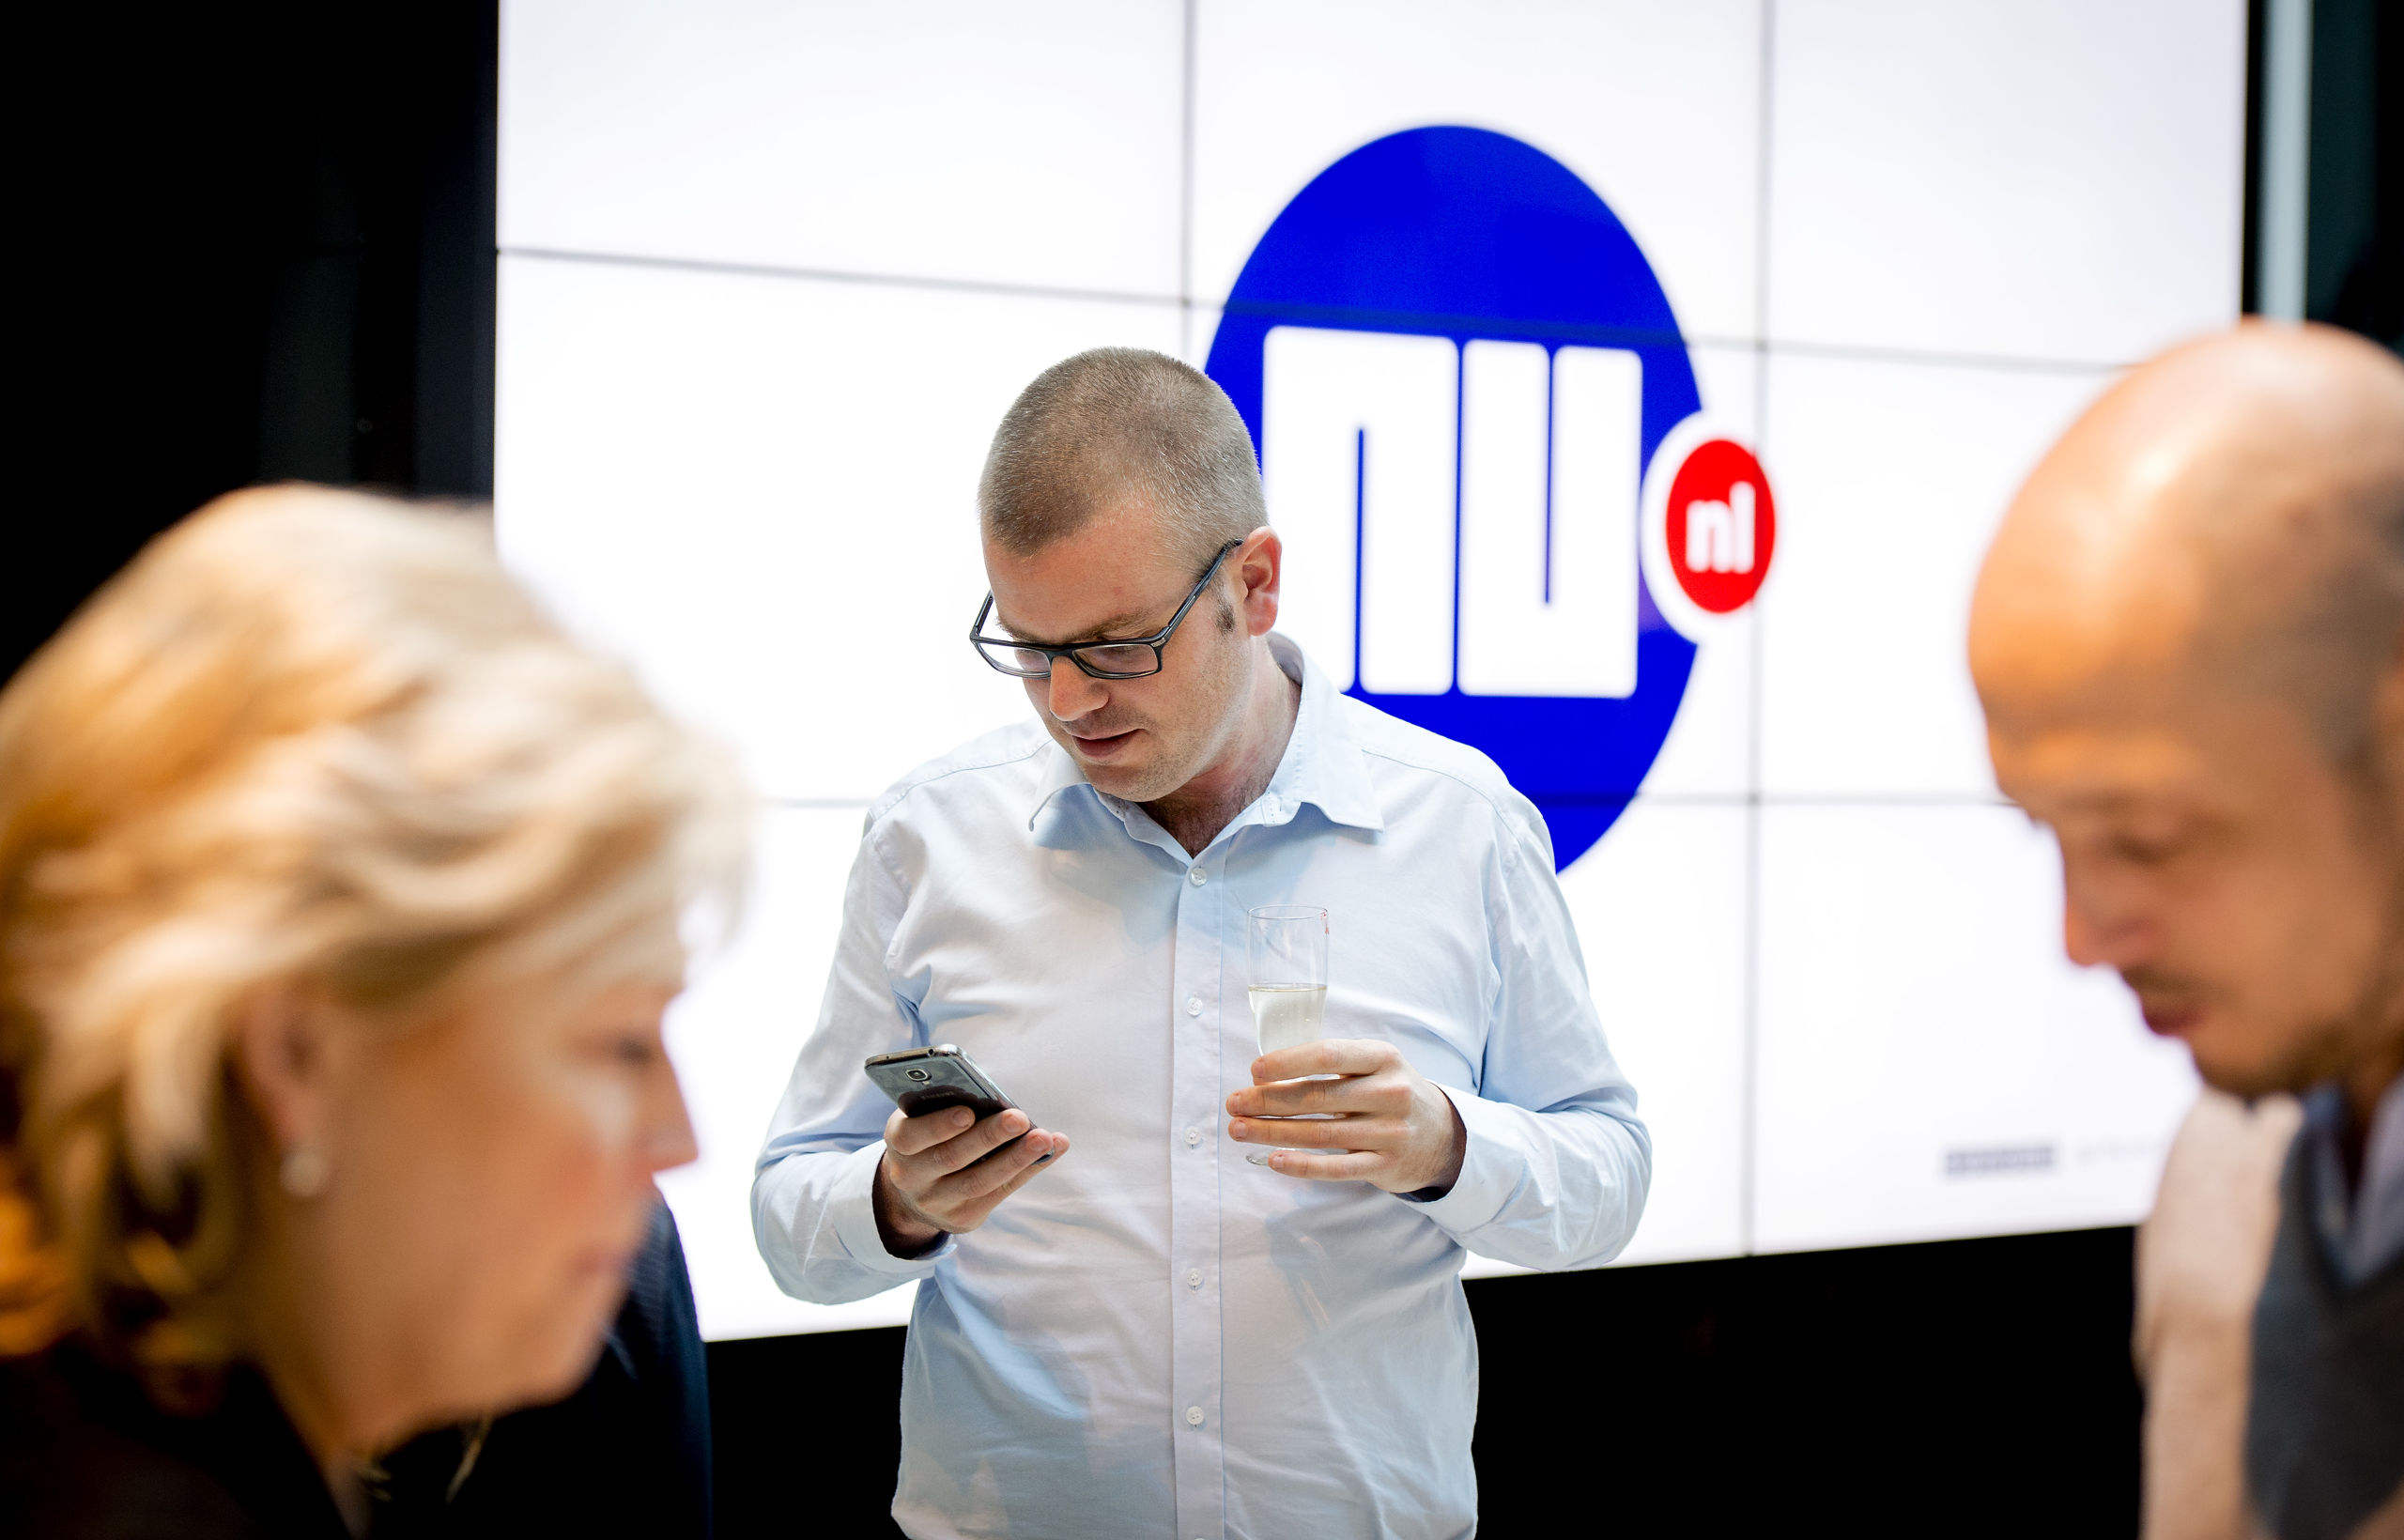 Hoofdredacteur Gert-Jaap Hoekman bekijkt de nieuwe app op zijn telefoon na de lancering van de vernieuwde NU.nl site.